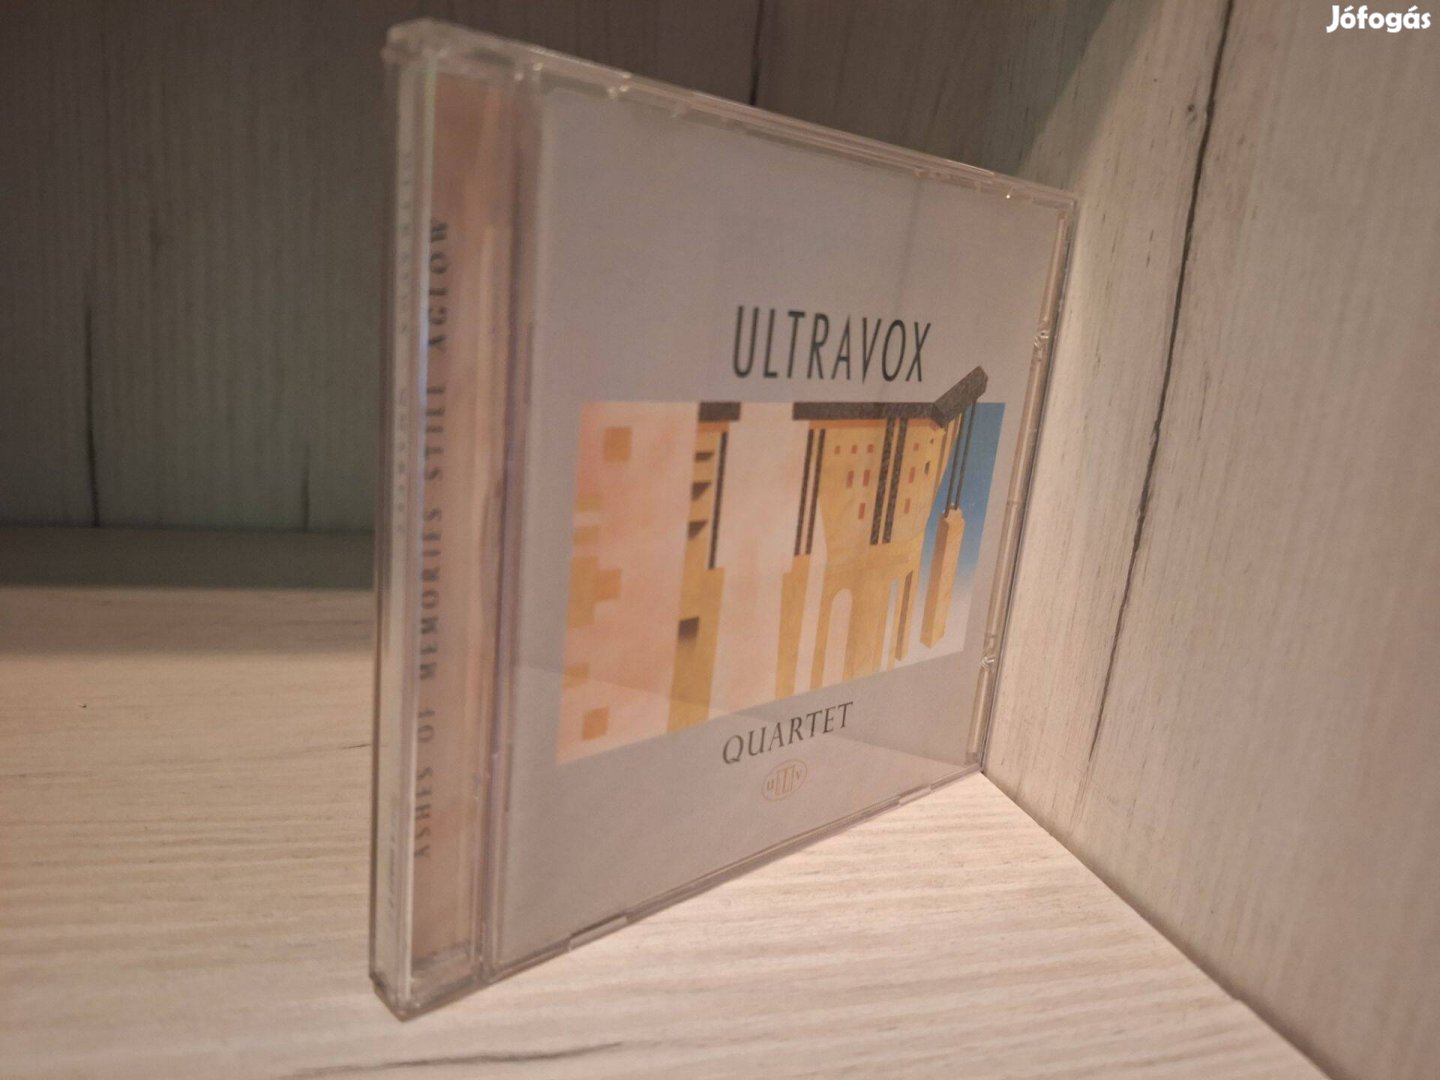 Ultravox - Quartet CD